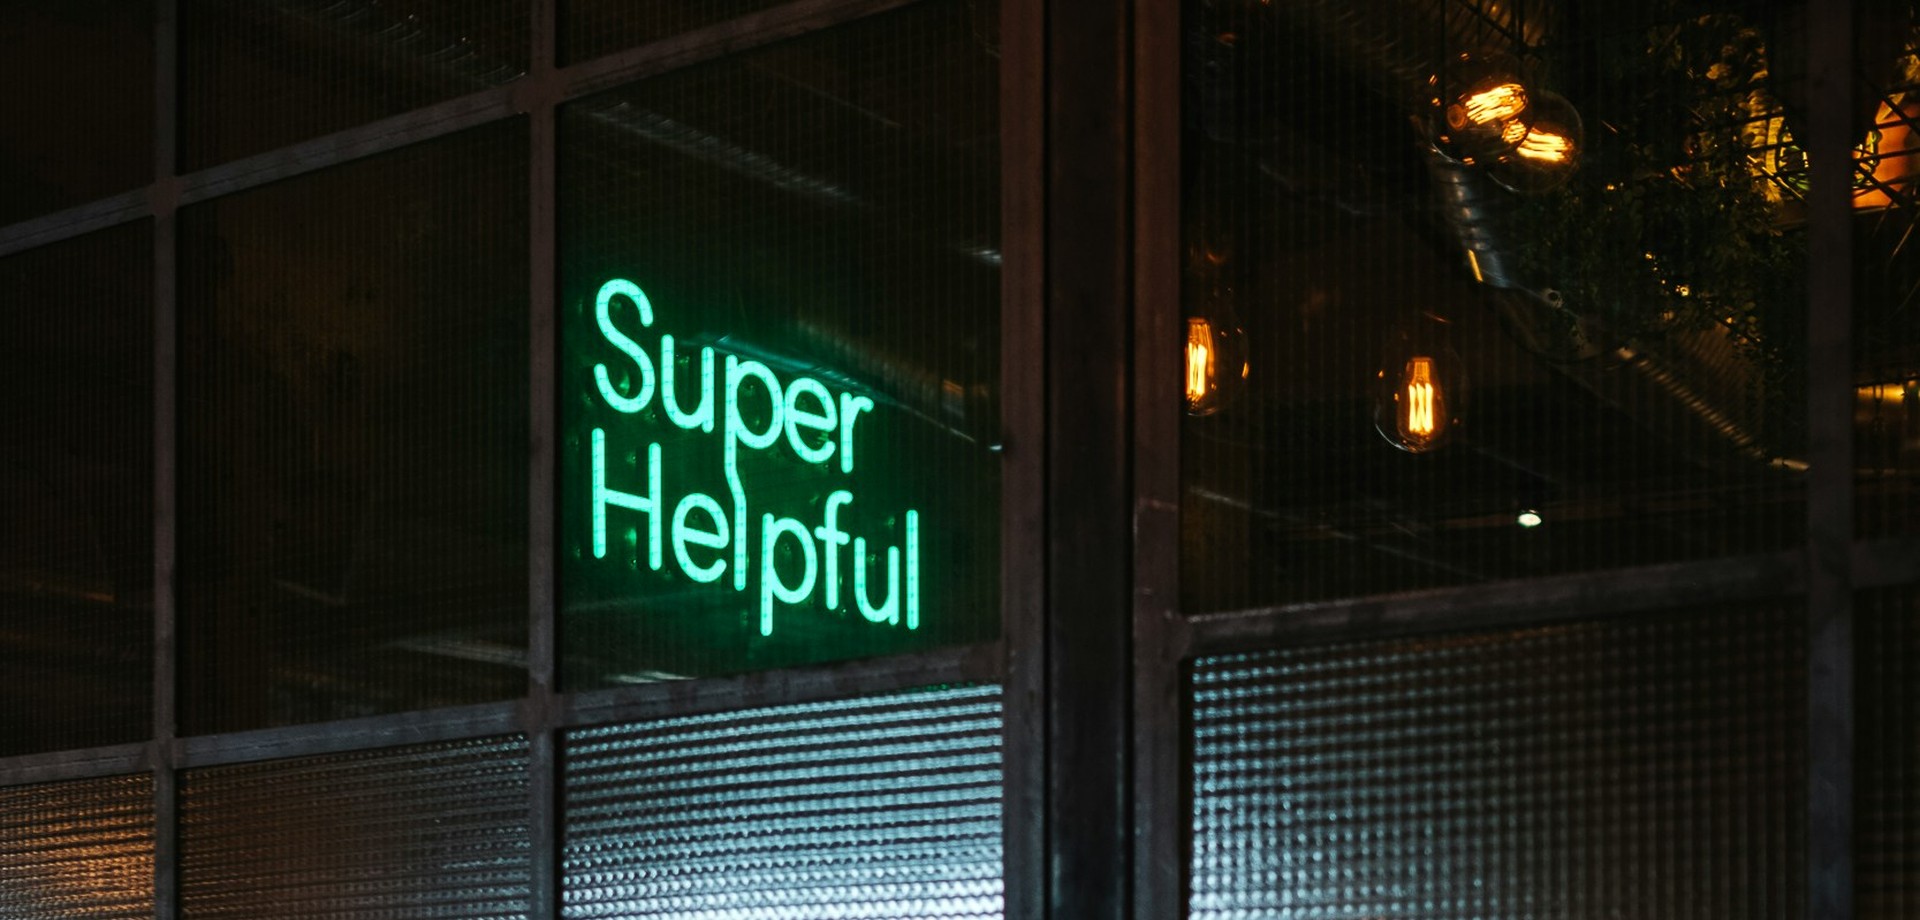 Dunkles Sprossenfenster, durch dieses sieht man einen türkisen Neon-Schriftzug: "Super Helpful"